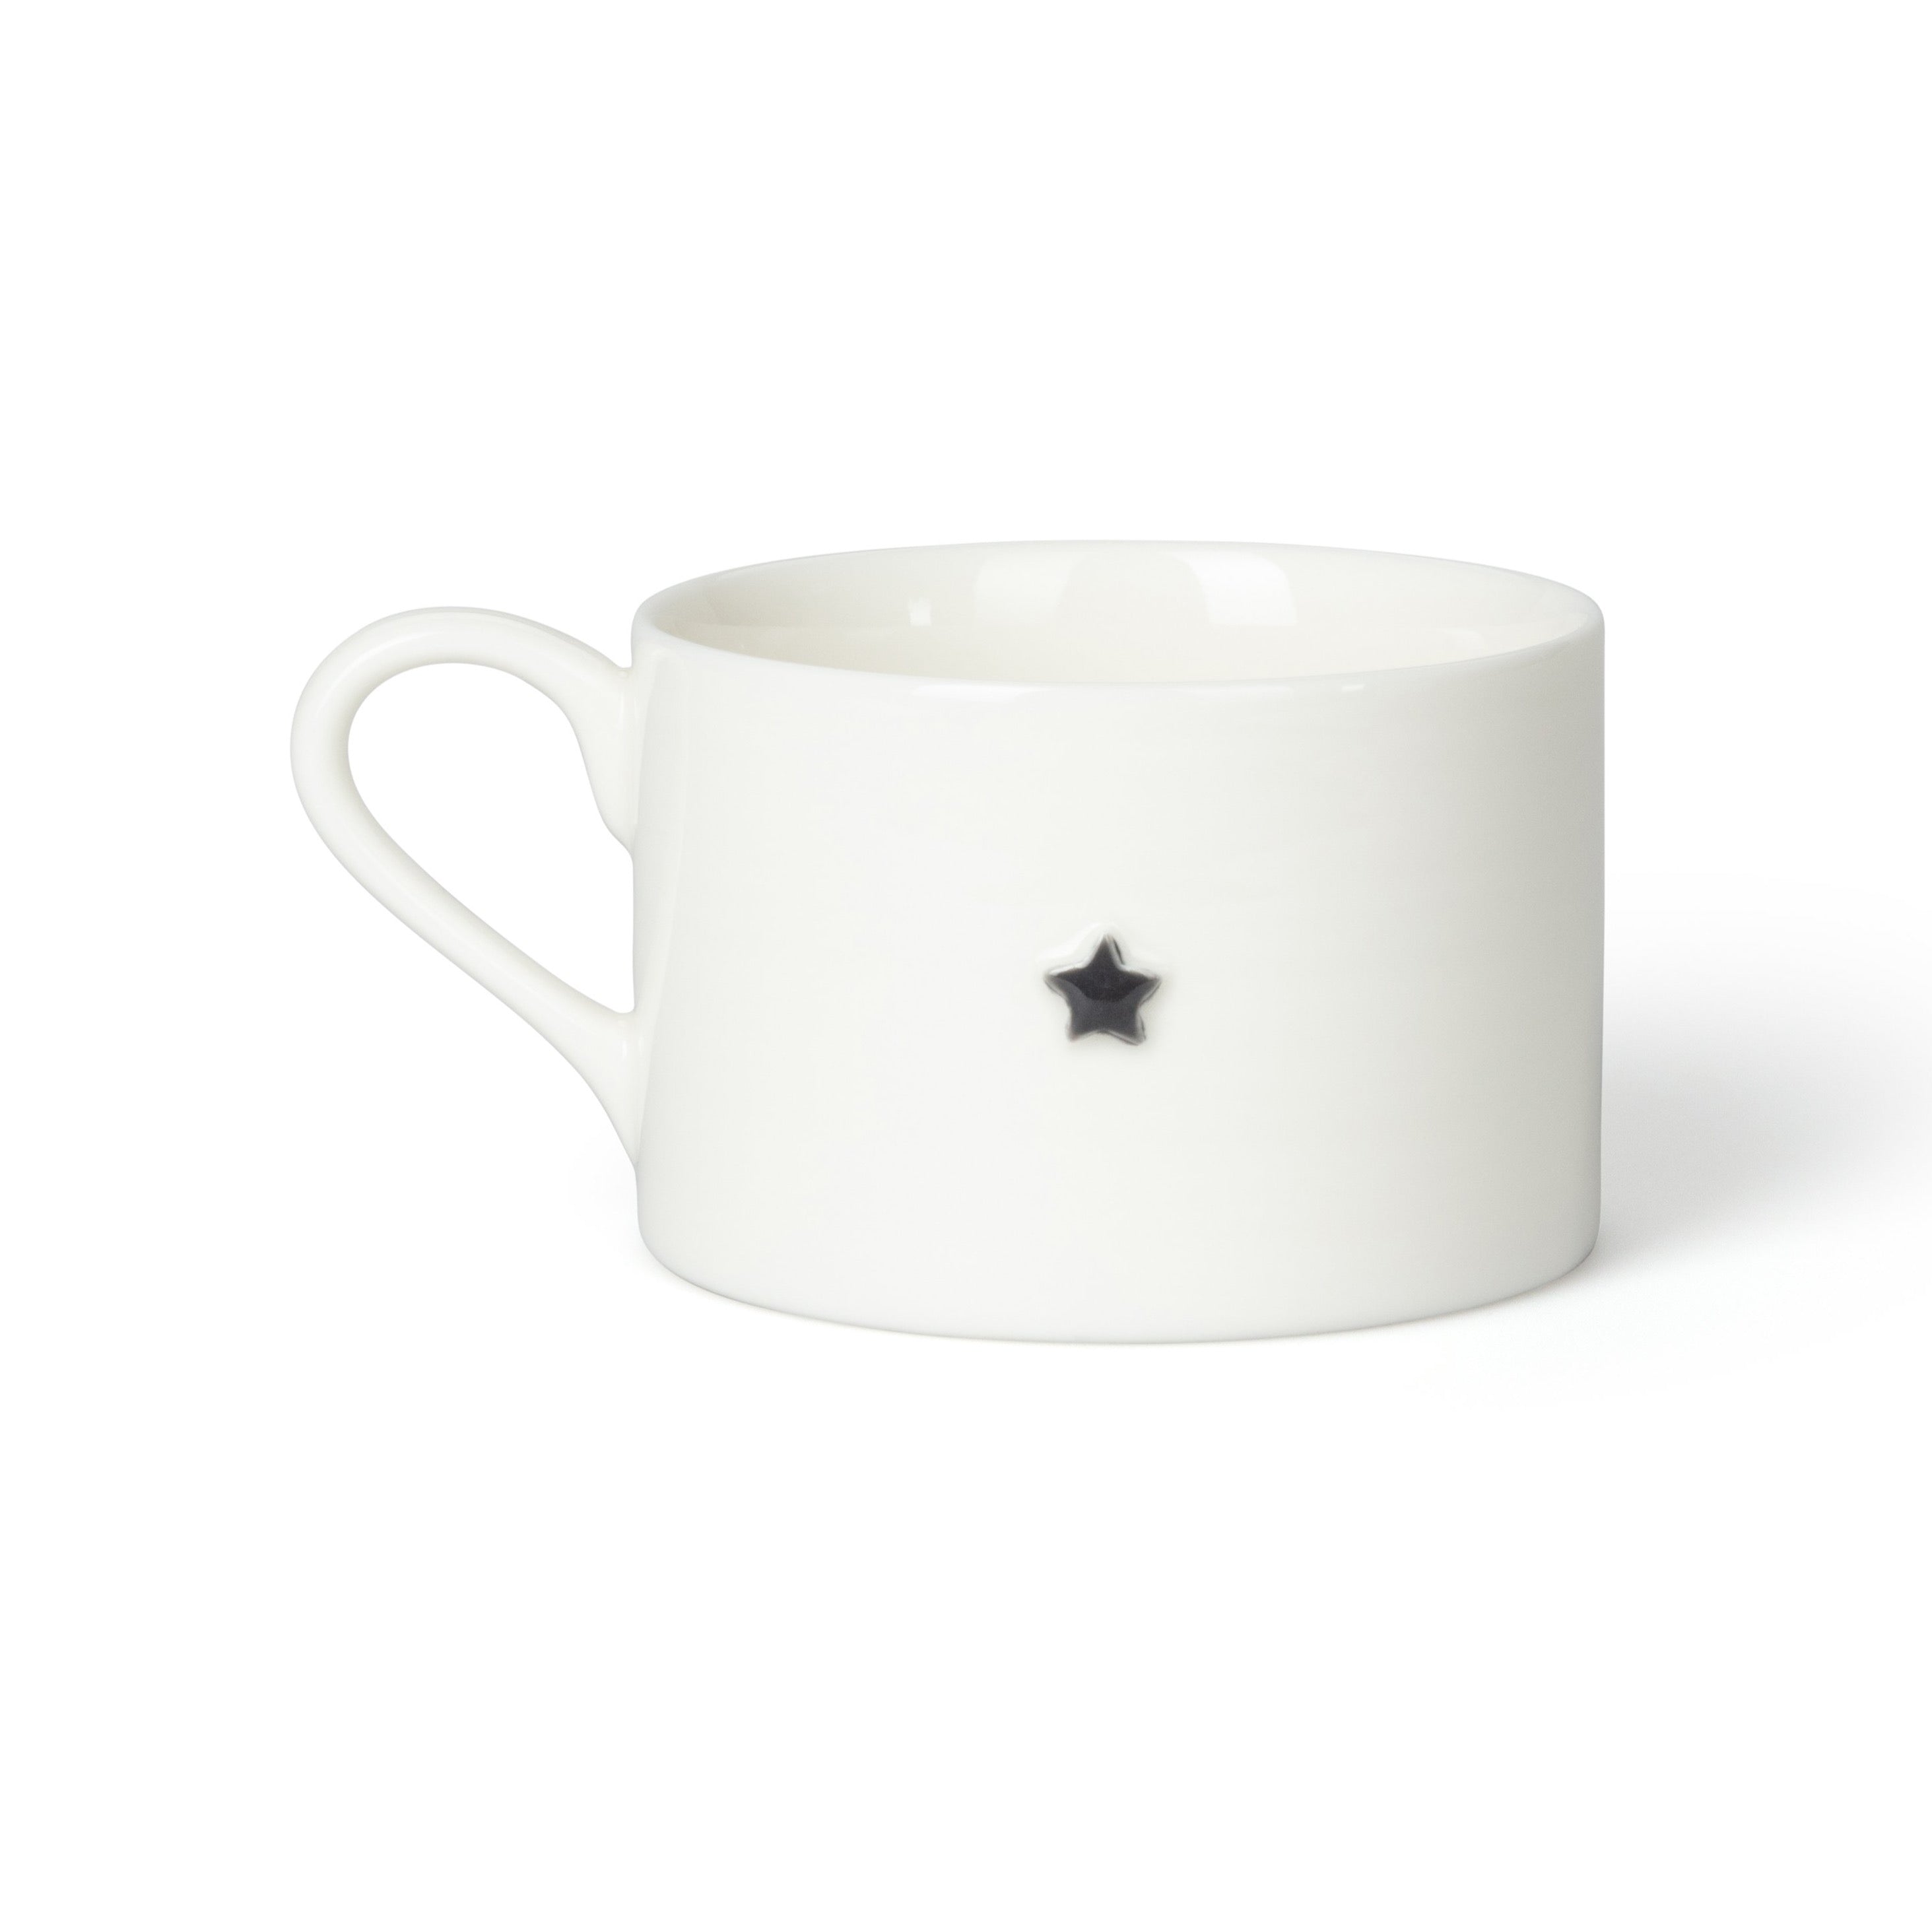 Star Mug